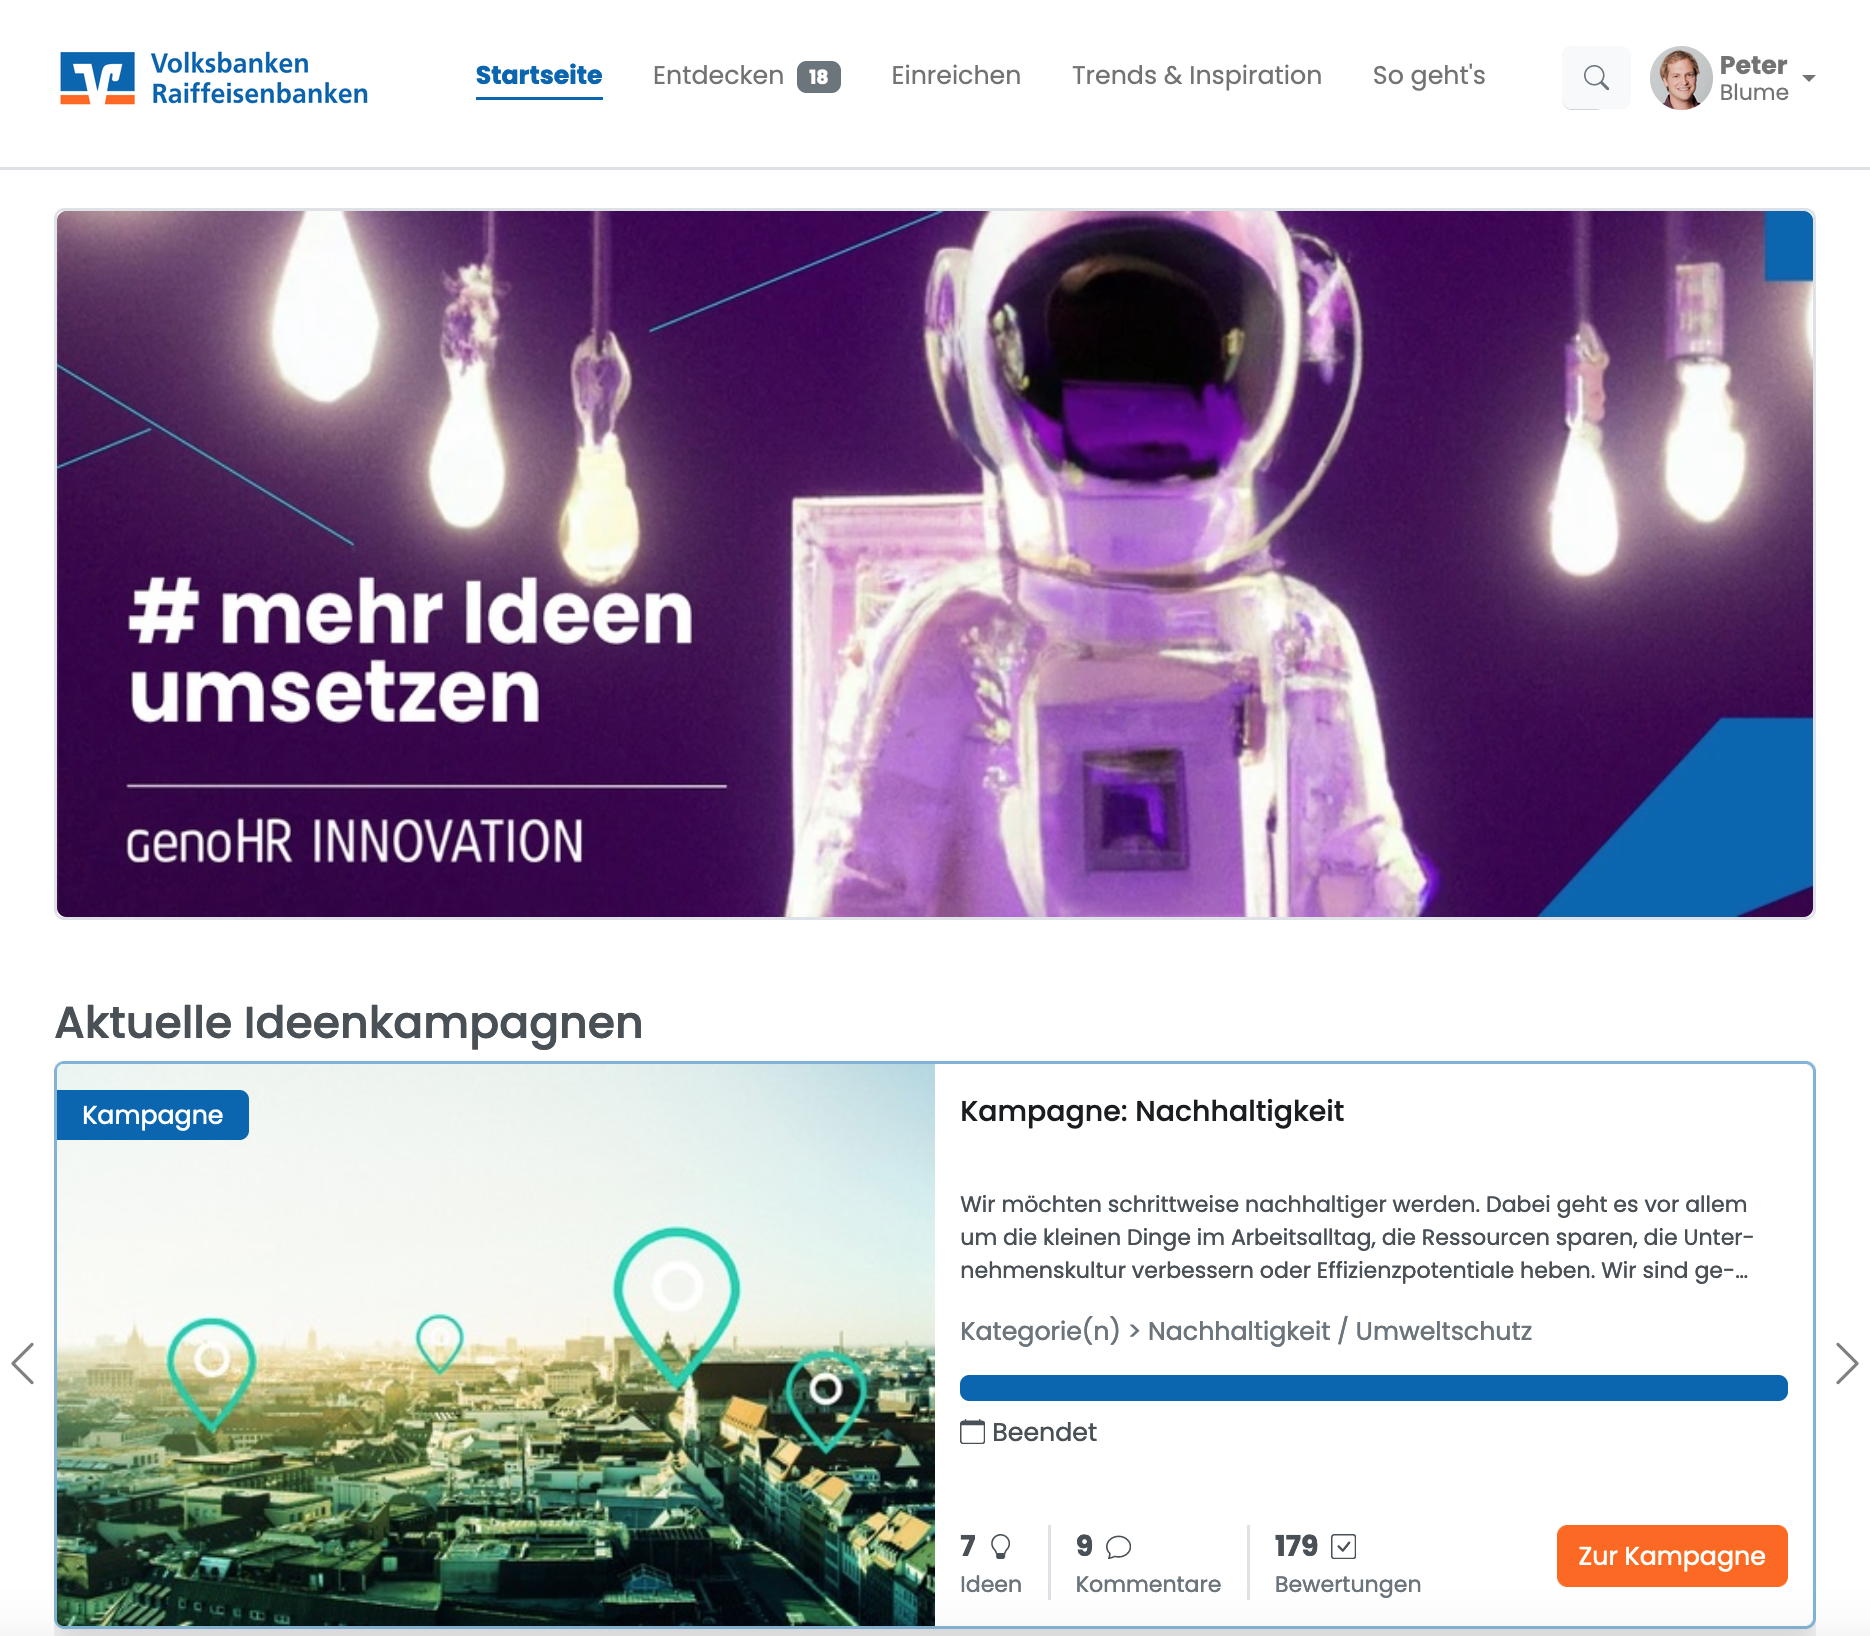 Geno.HR-Innovation Ideenmanagement Volksbanken Raiffeisenbanken